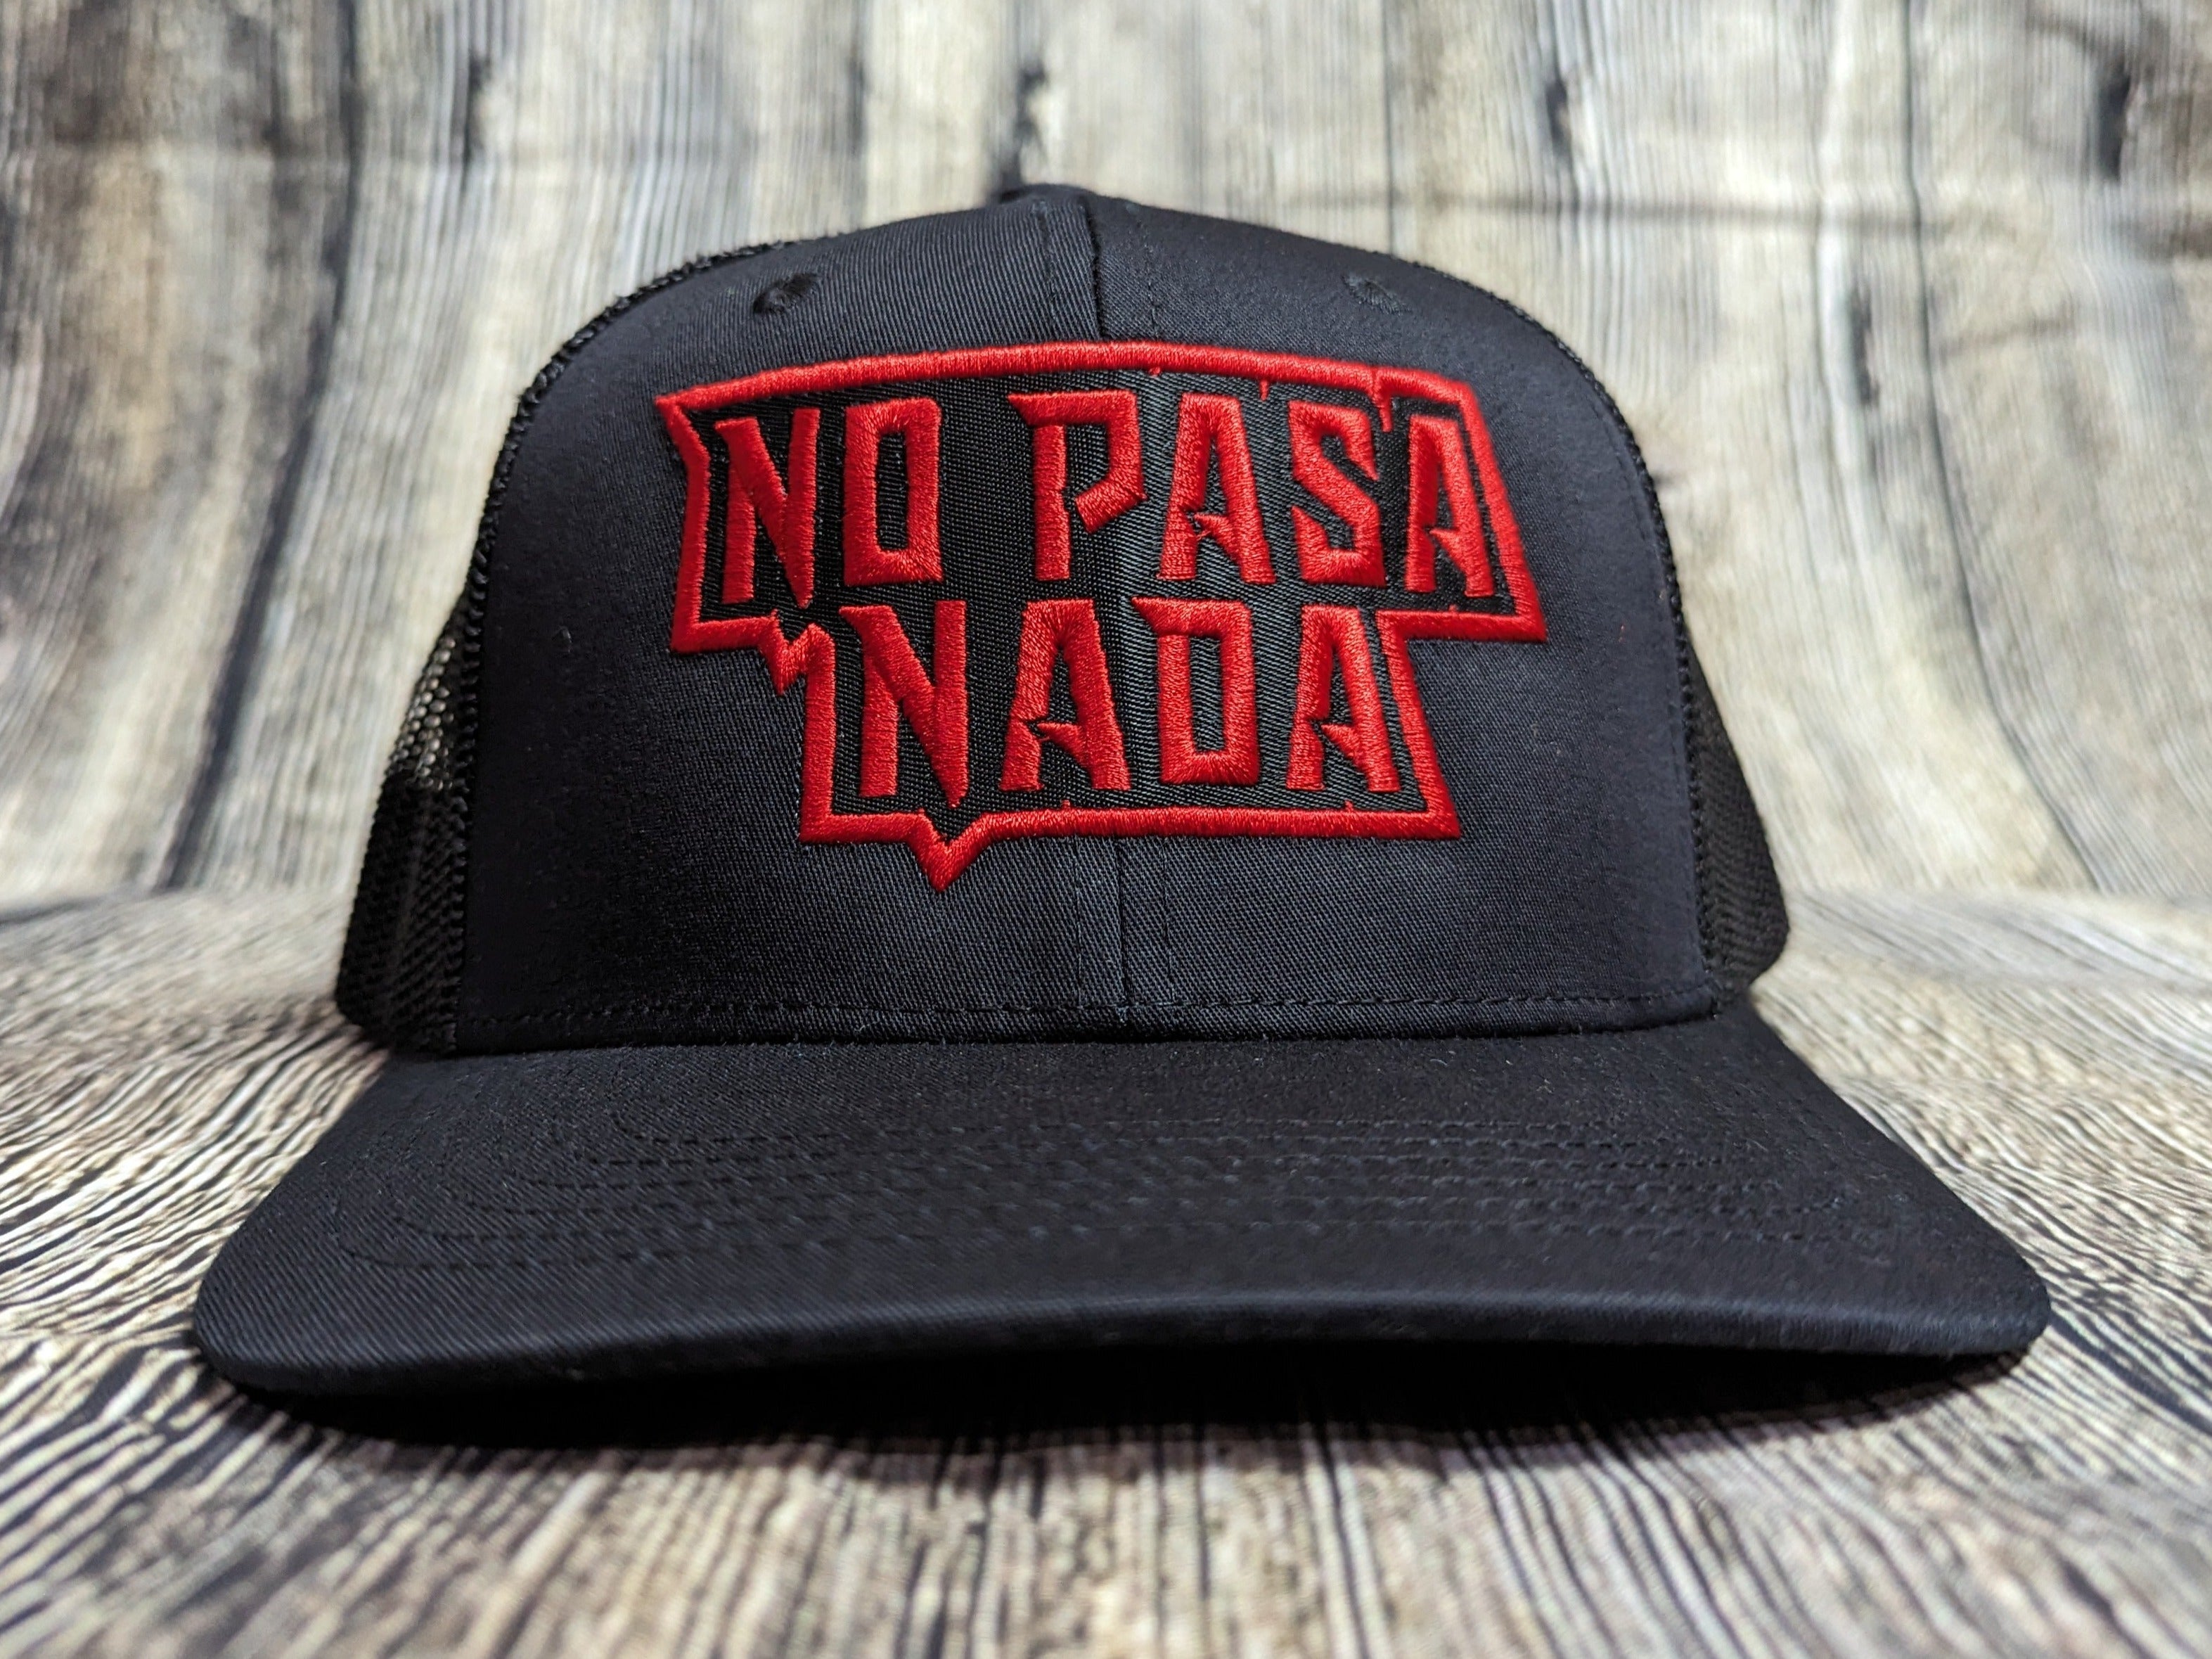 No Pasa Nada Red - Snapback Mesh Hat - Curved Bill